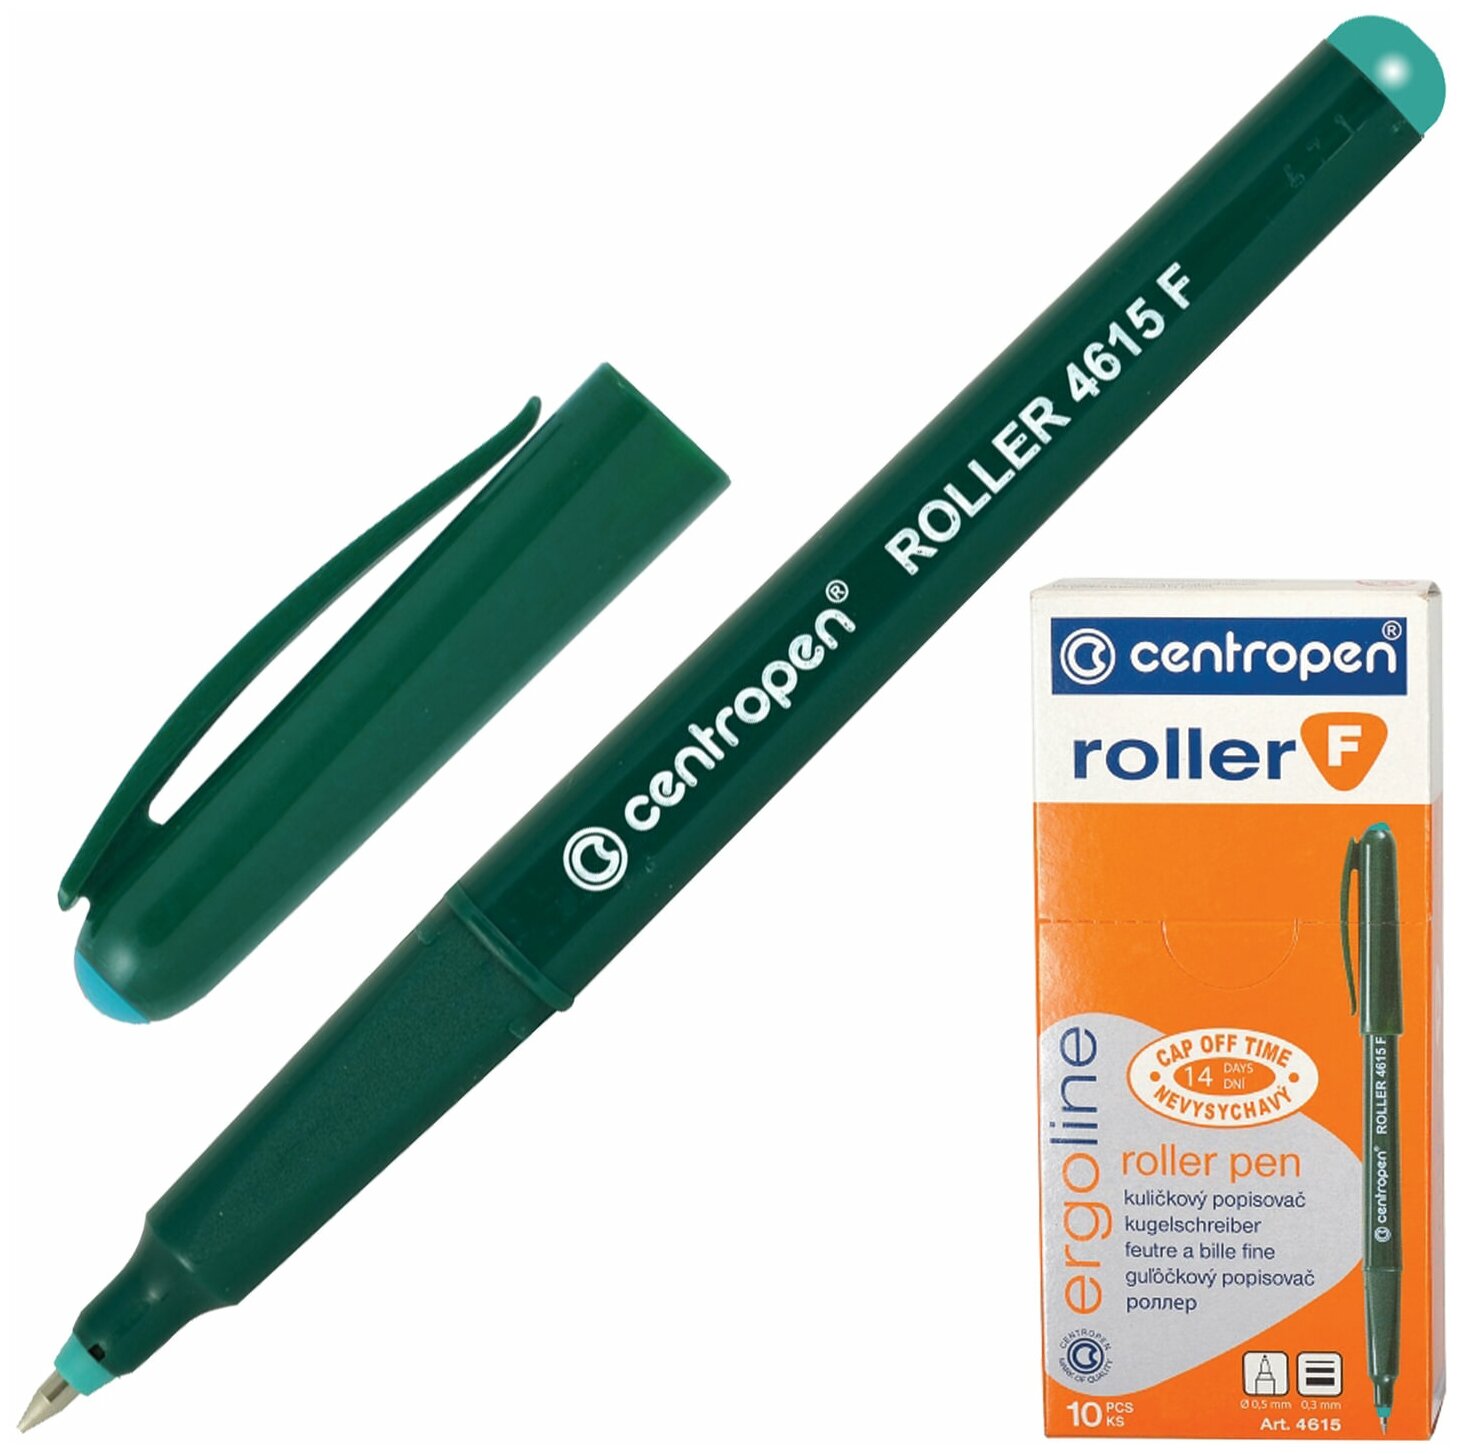 Ручка-роллер CENTROPEN, зеленая, трехгранная, корпус зеленый, узел 0,5 мм, линия письма 0,3 мм, 4615, 3 4615 0110